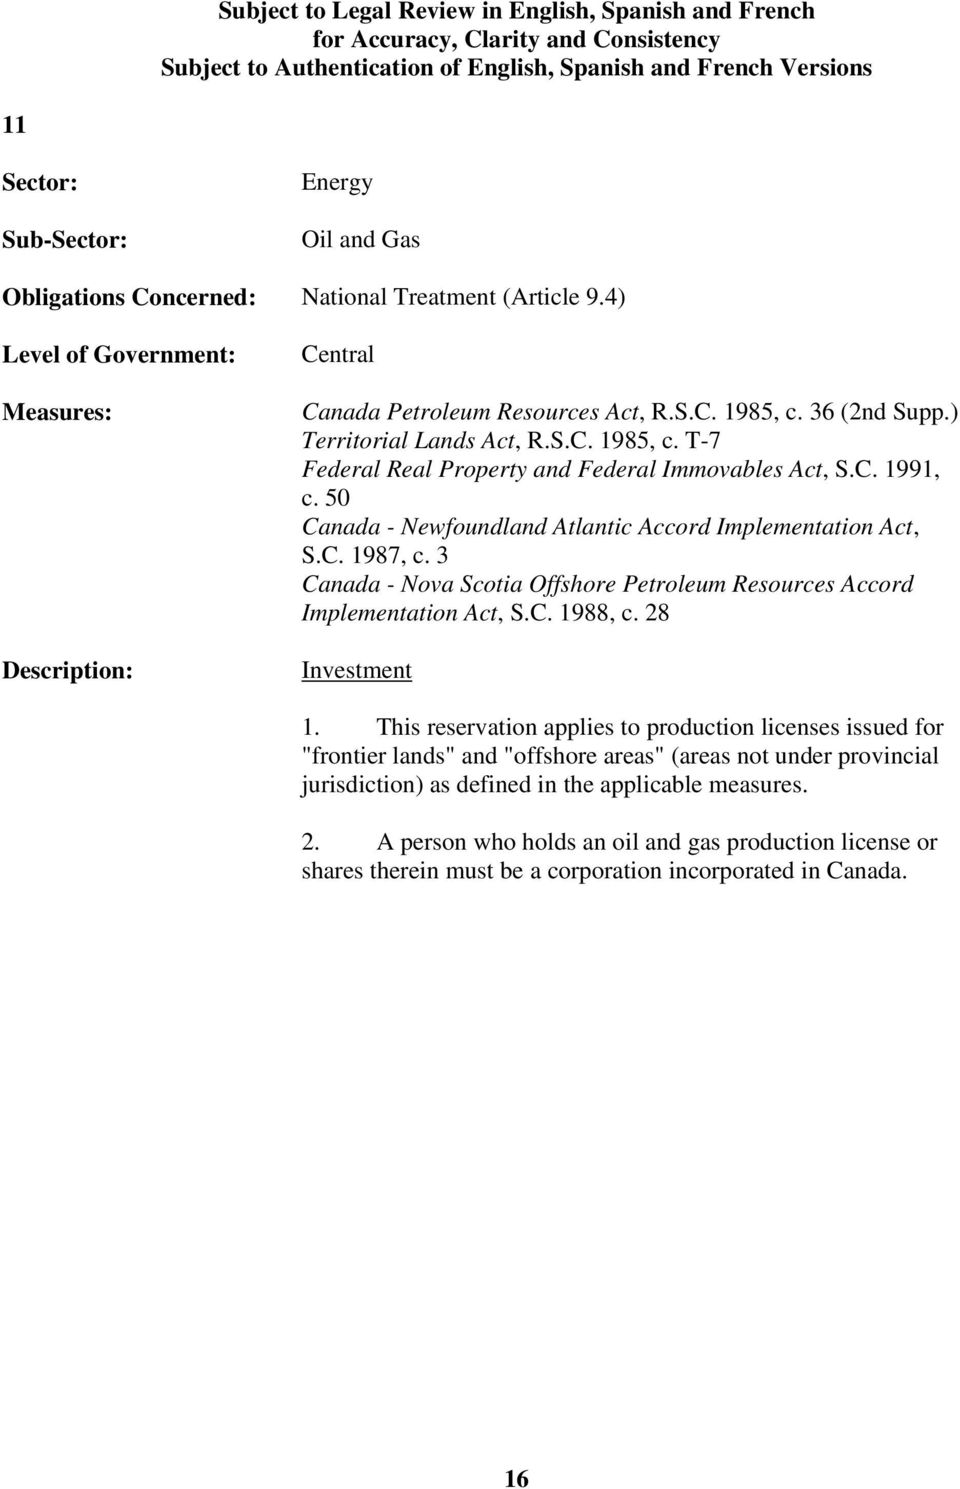 3 Canada - Nova Scotia Offshore Petroleum Resources Accord Implementation Act, S.C. 1988, c. 28 Investment 1.